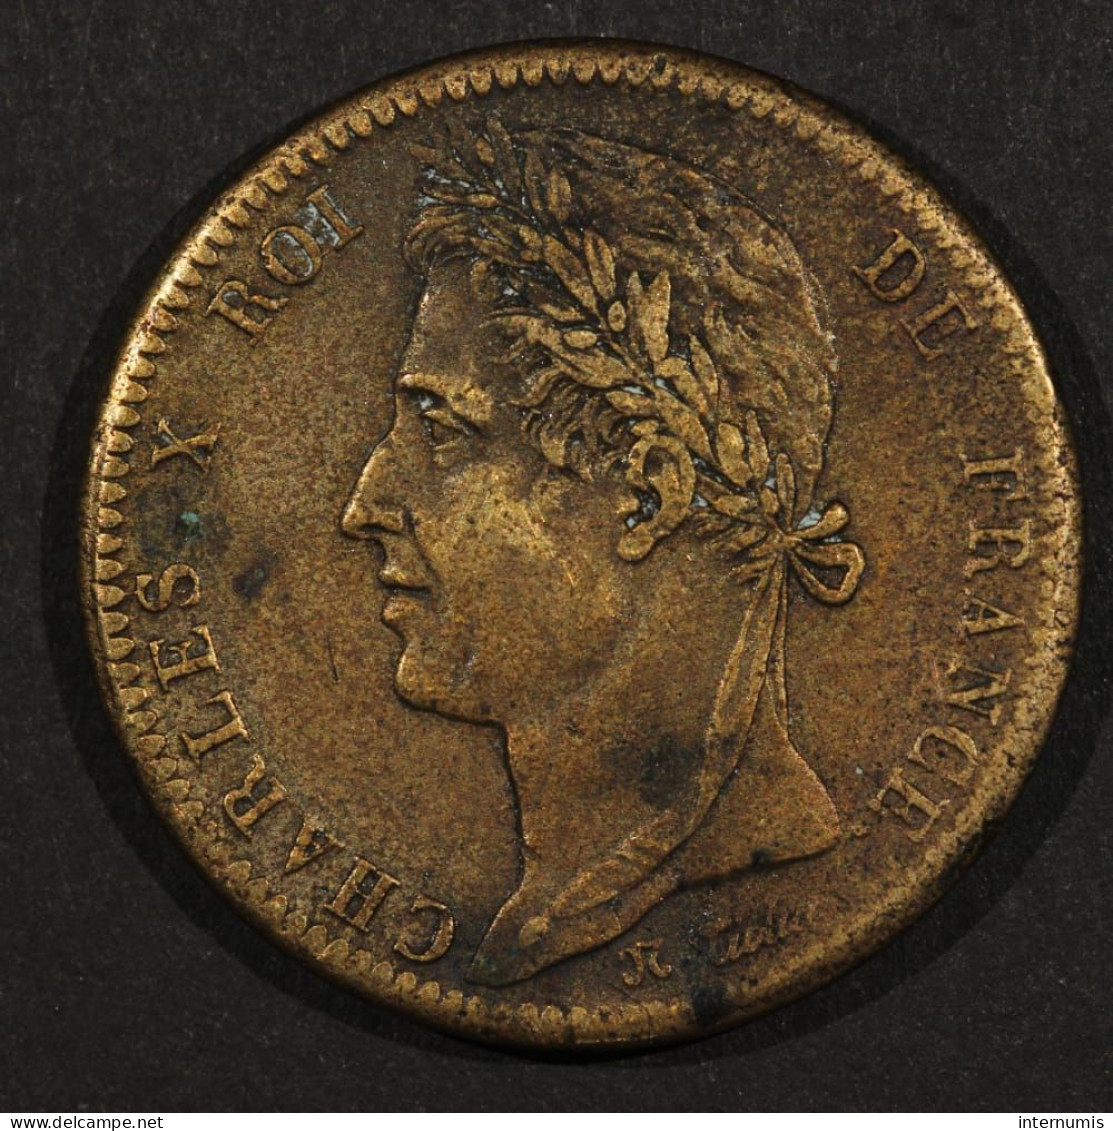 France, Charles X, 10 Centimes - Colonies Françaises, 1828, A - Paris, Bronze, TTB (EF), KM#11.1 & Lec.306 - Franse Koloniën (1817-1844)